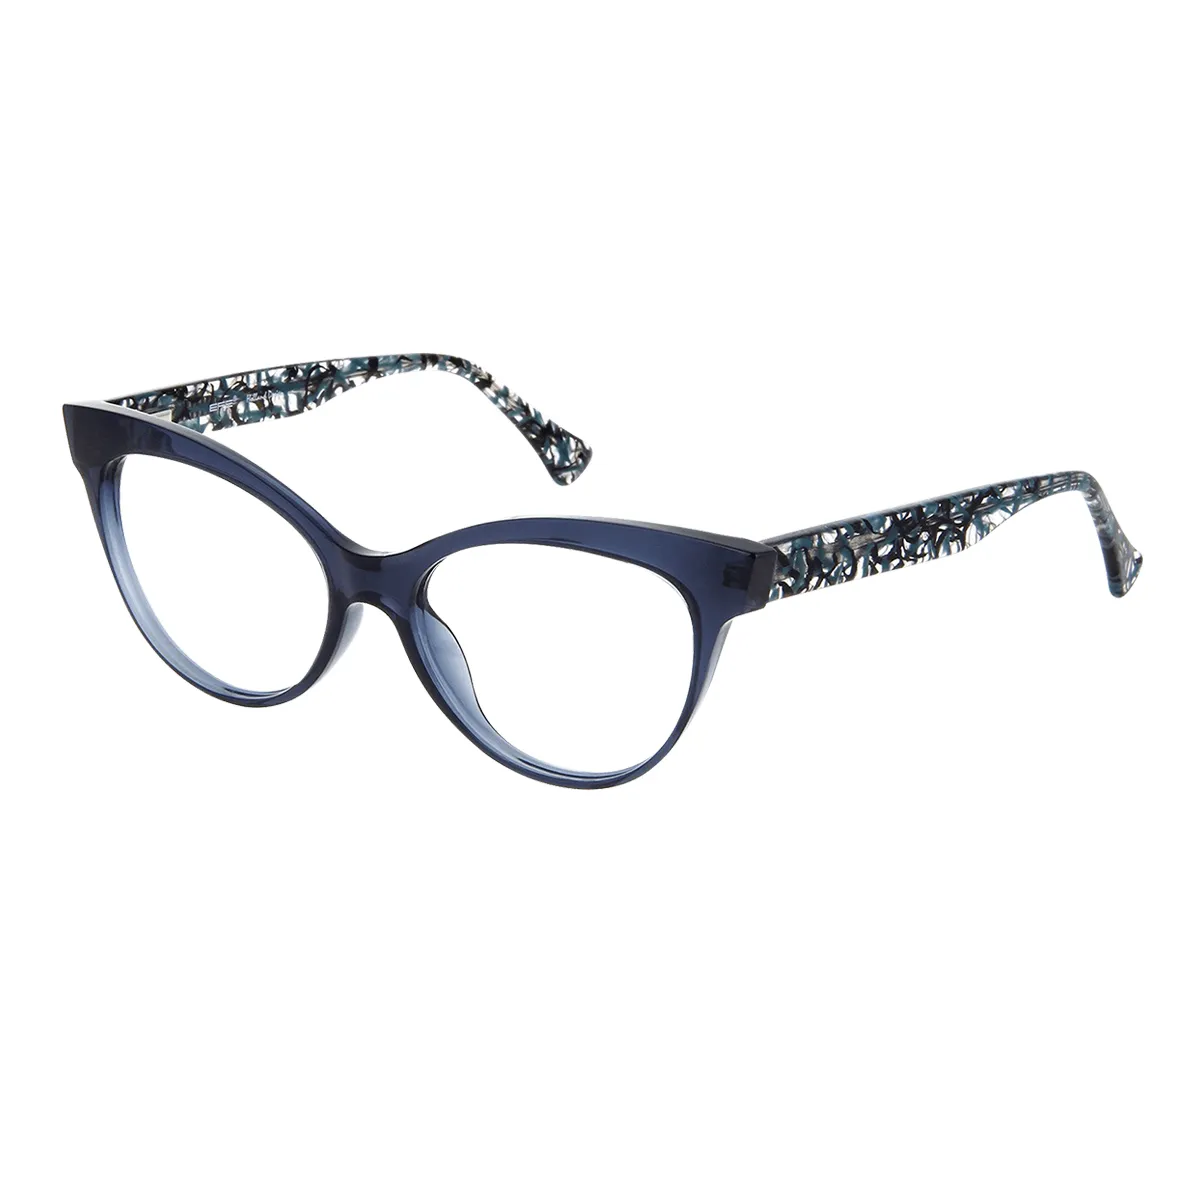 Ricarda - Cat-eye Blue Glasses for Women